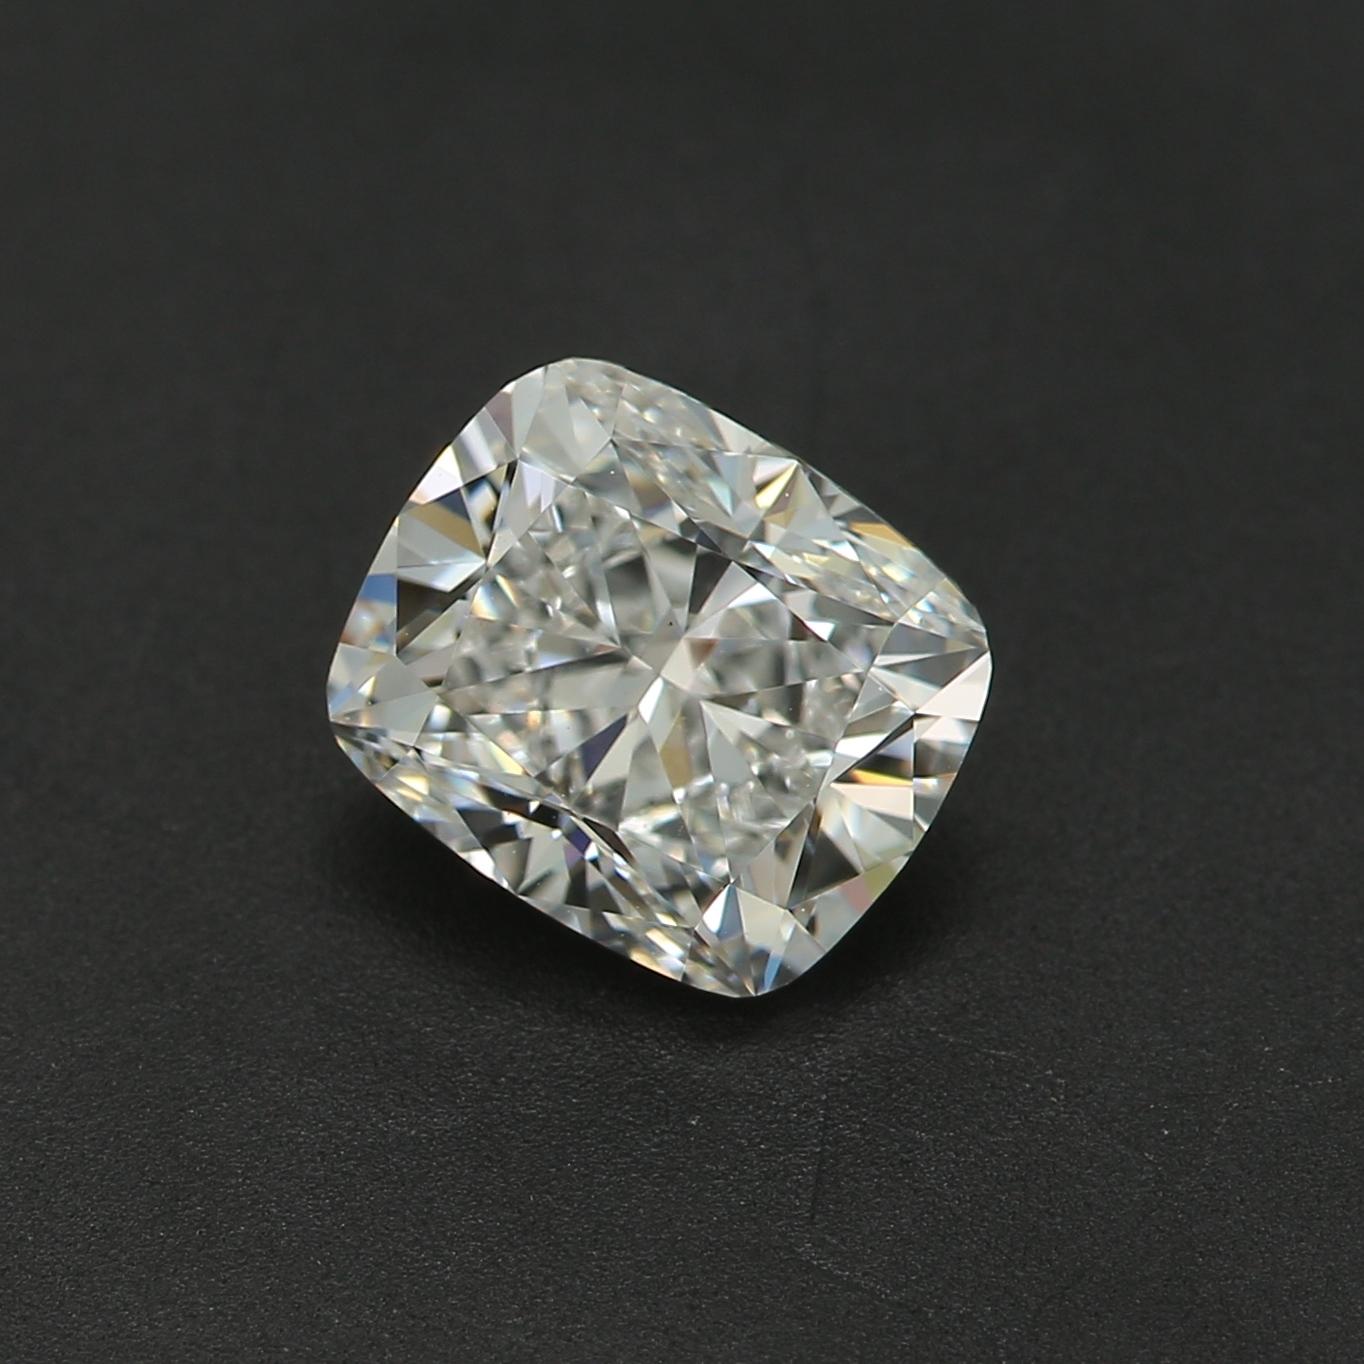 *100% NATÜRLICHE FANCY-DIAMANTEN*

Diamant Details

➛ Form: Kissen
➛ Farbqualität: D
➛ Karat: 1.01
➛ Klarheit: VS1
➛ GIA zertifiziert 

^MERKMALE DES DIAMANTEN^

Unser 1,01-Karat-Diamant bezieht sich auf das Gewicht des Diamanten, nicht auf seine